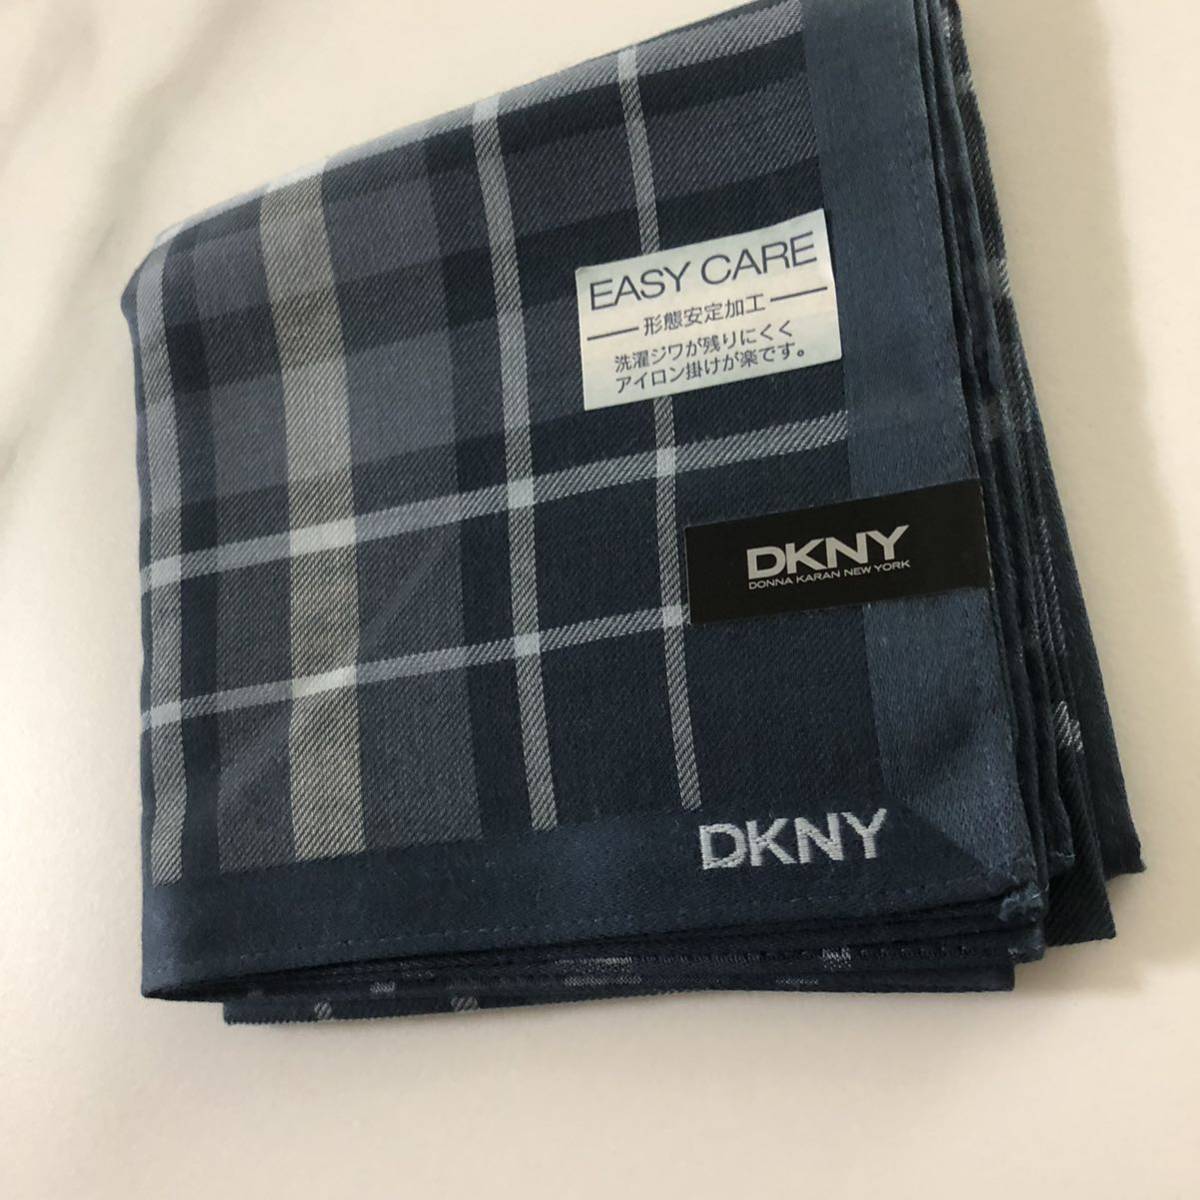 ***DKNY носовой платок стандартный товар новый товар casy care